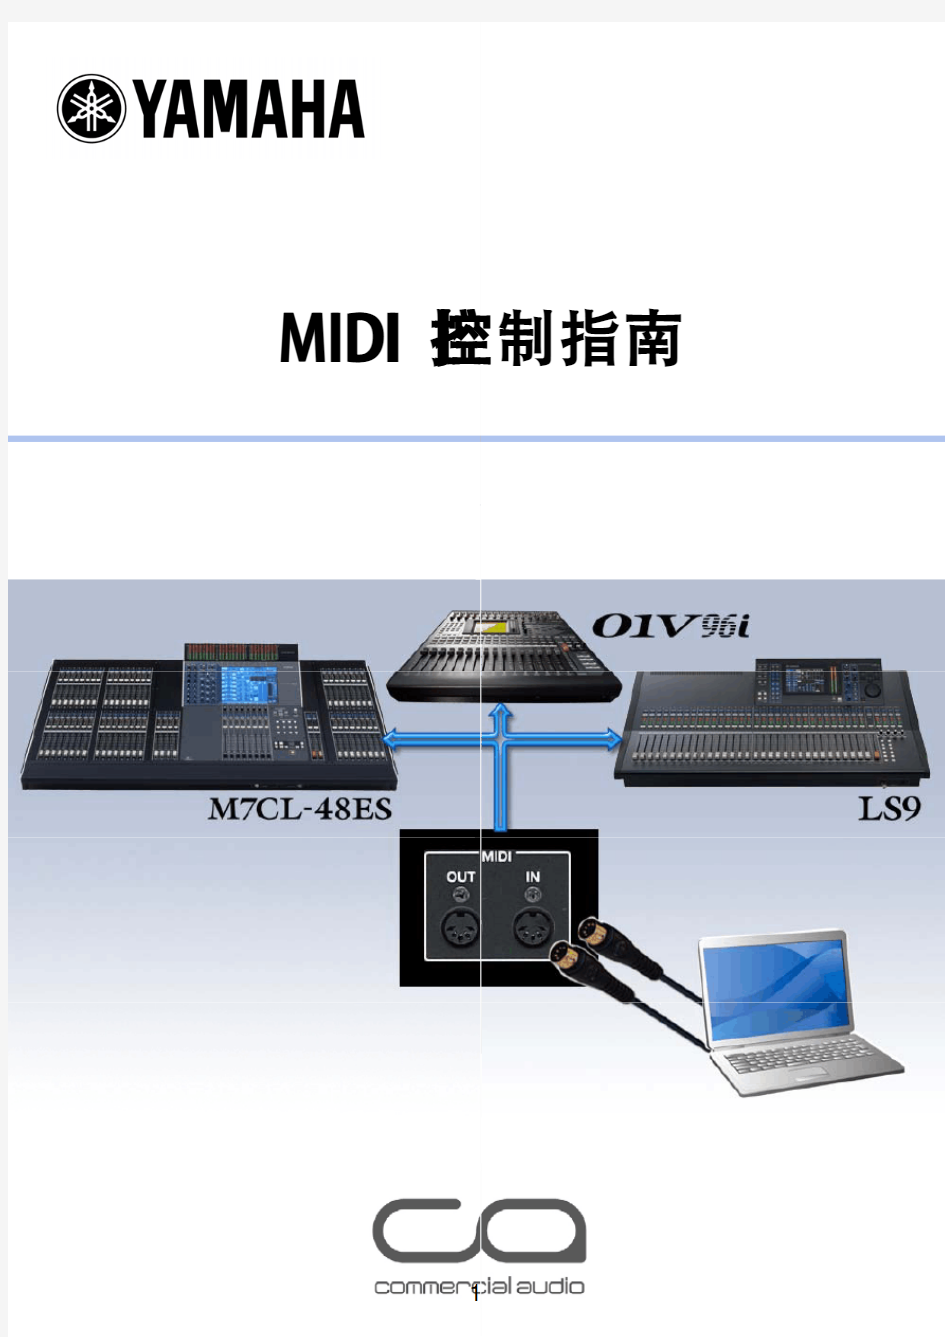 MIDI控制指南